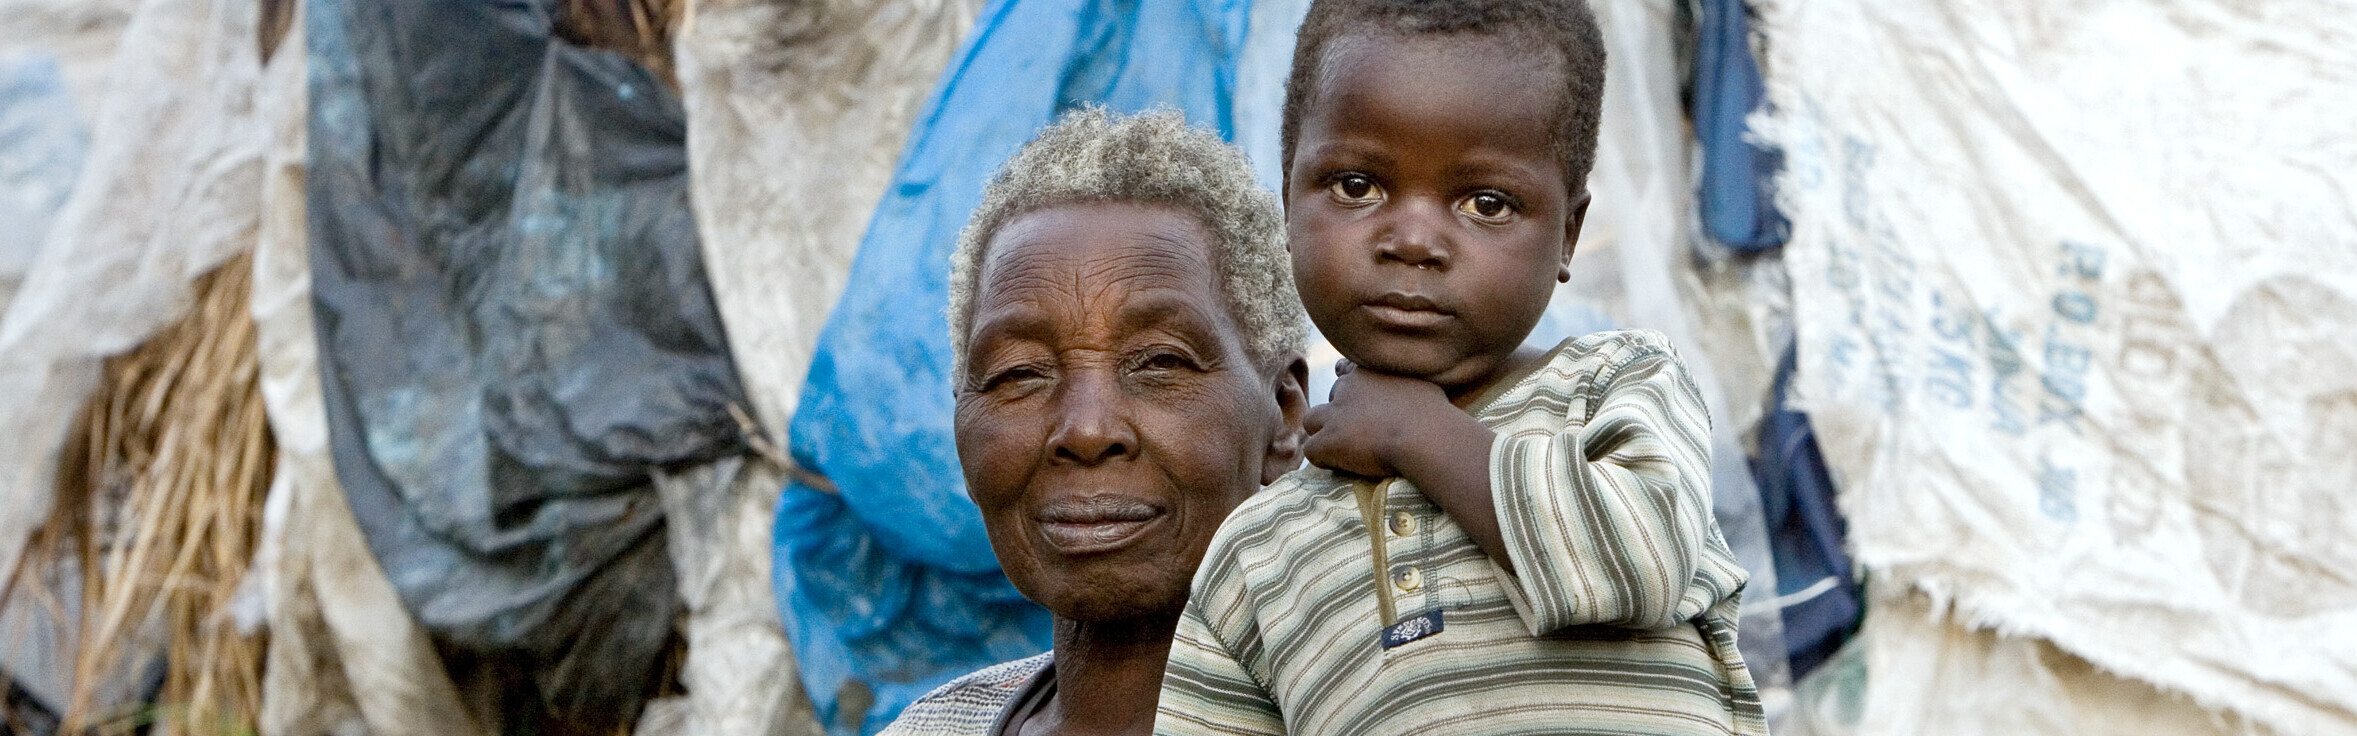 Eine Frau und ein Kind im Kongo (Archivbild). Jetzt online spenden und helfen!